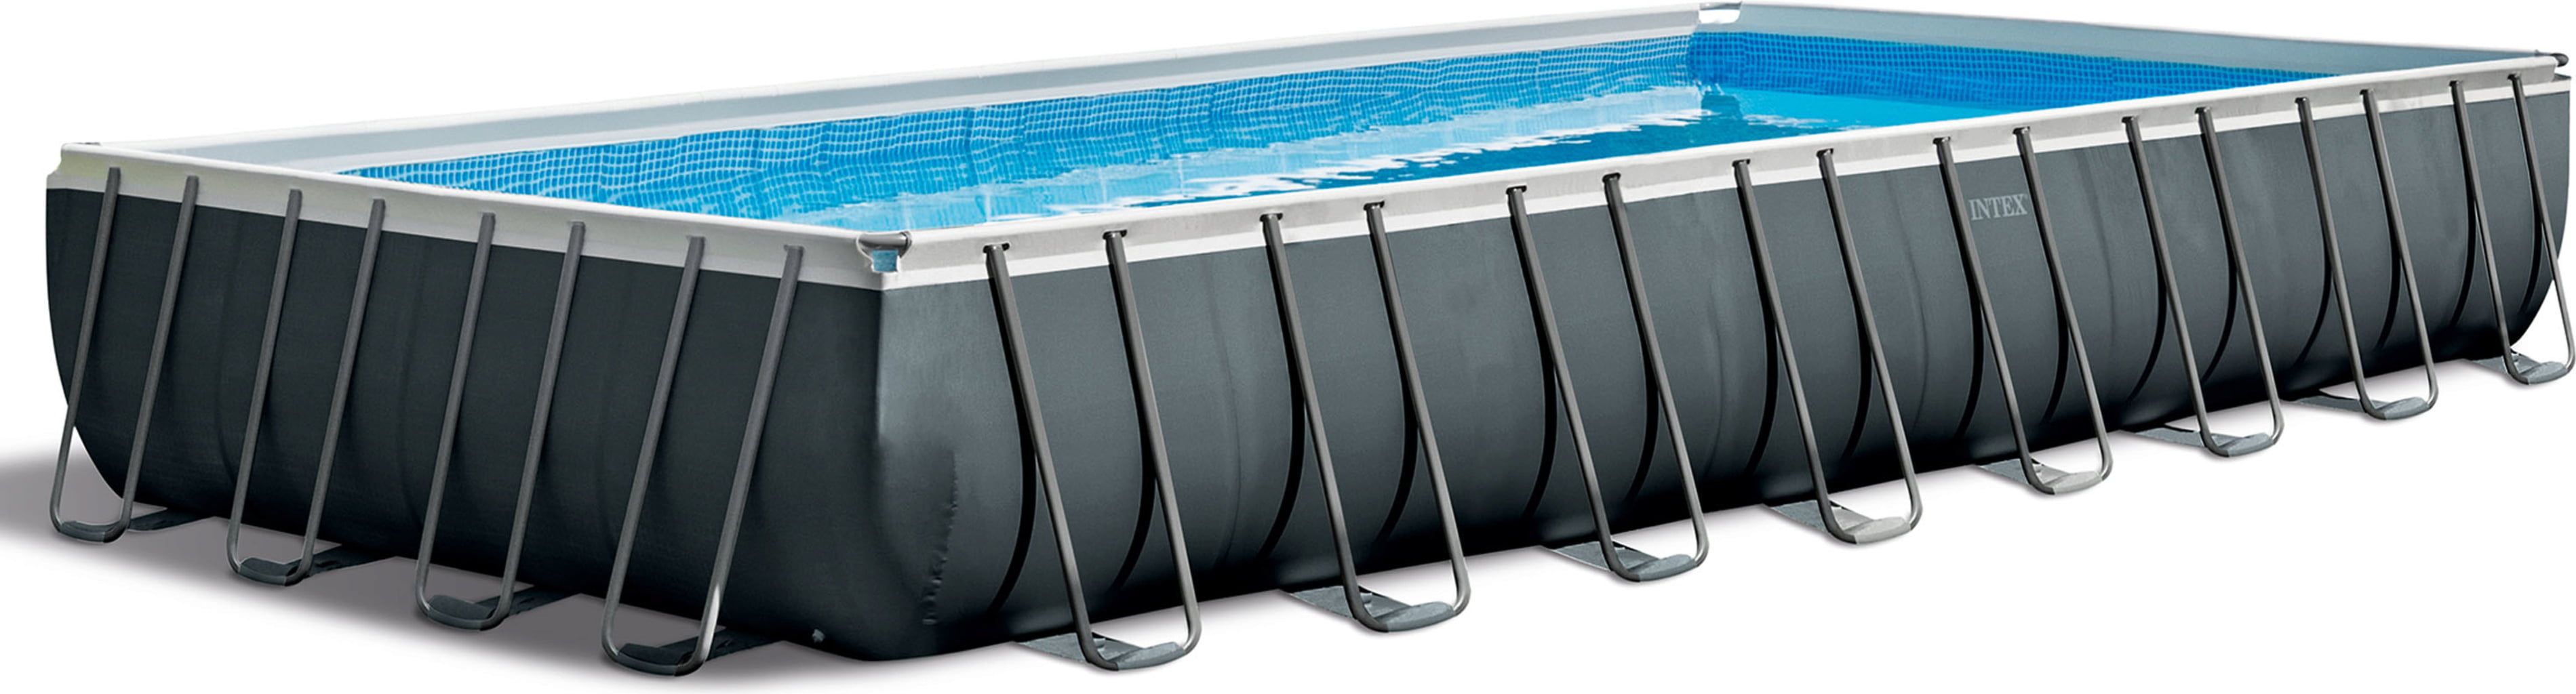 Piscine Ultra XTR Rectangulaire 975 x 488 x 132 cm - Set standard + système eau salée + équipement premium